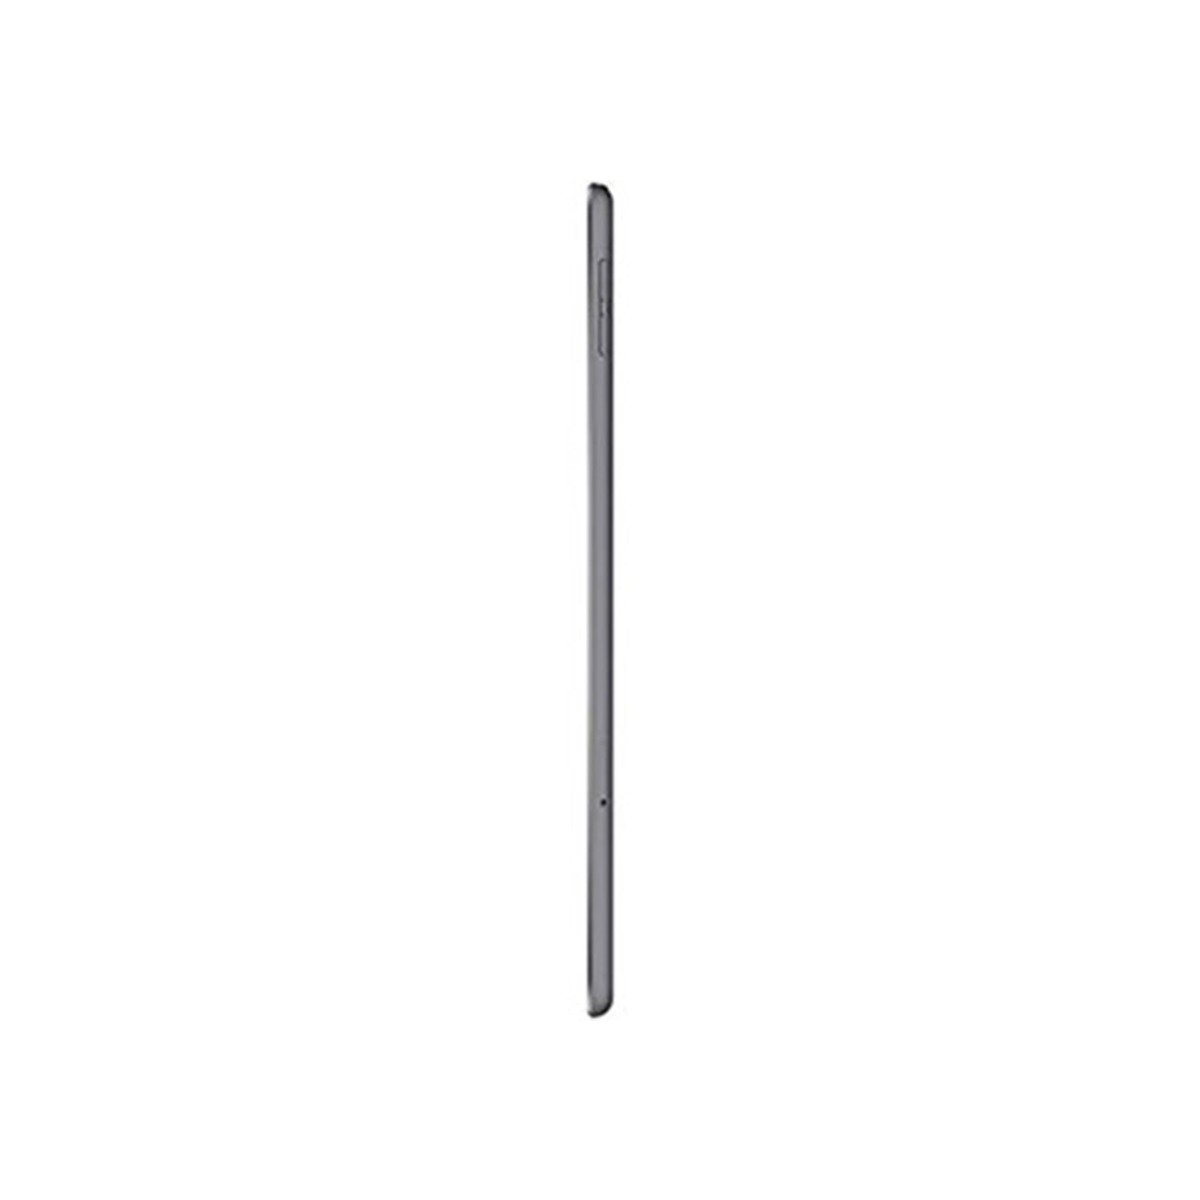 Apple iPad Mini (Wi-Fi + Cellular, 256GB) Space Gray